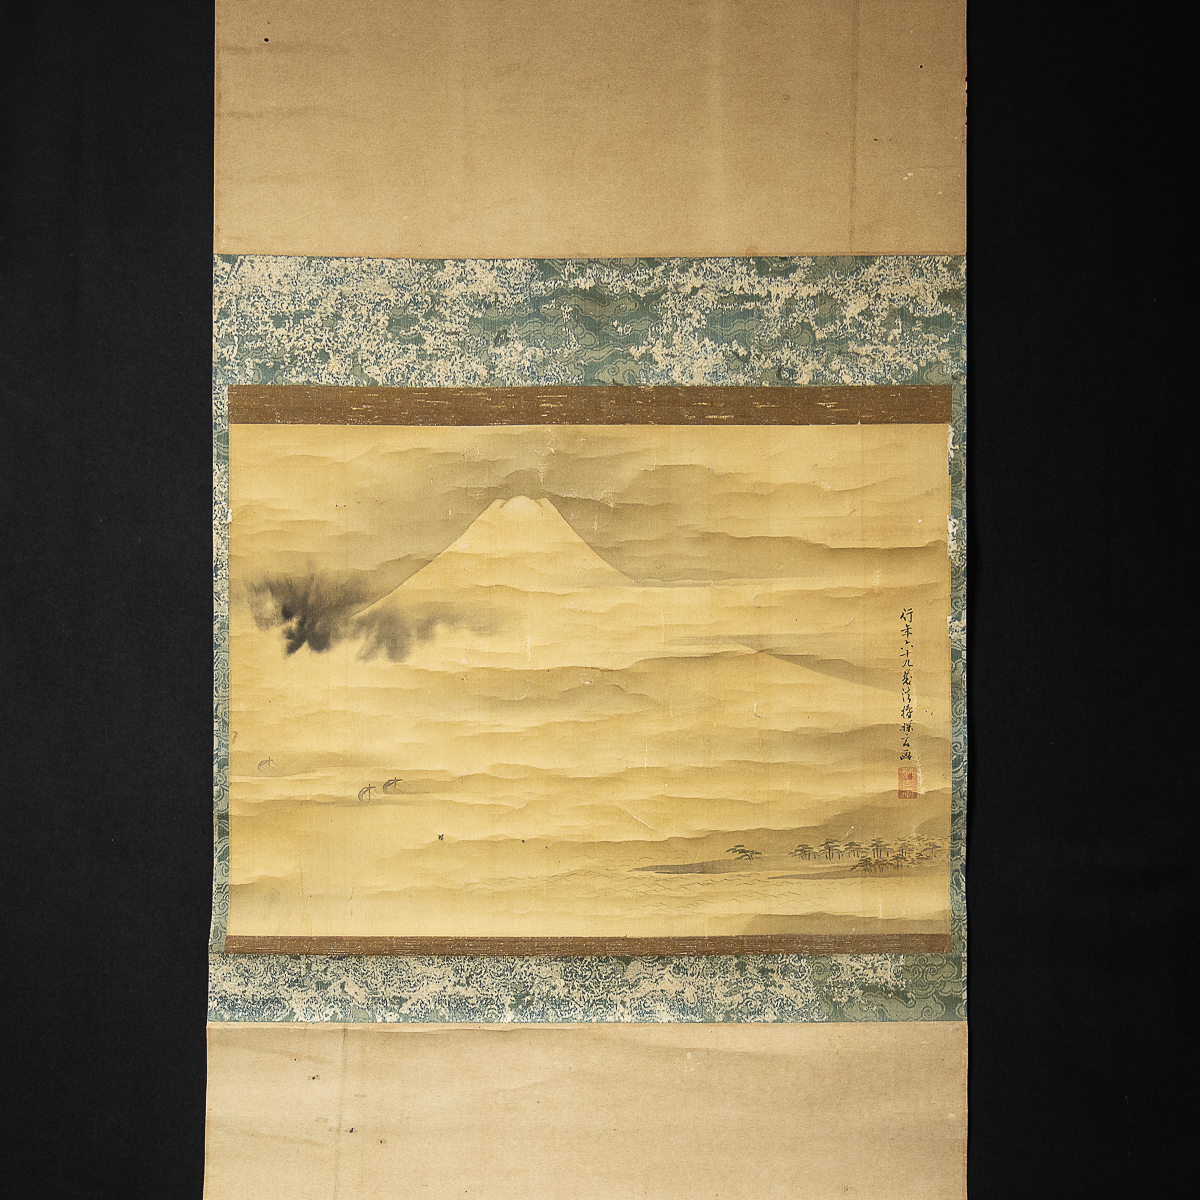 724 [Kopie] Kano Tangen Mt. Fuji Arbeit im Alter von 69 Jahren Maler des Tokugawa-Shogunats Aktiv während der Bunka Bunsei-Zeit, Malerei, Japanische Malerei, Landschaft, Fugetsu